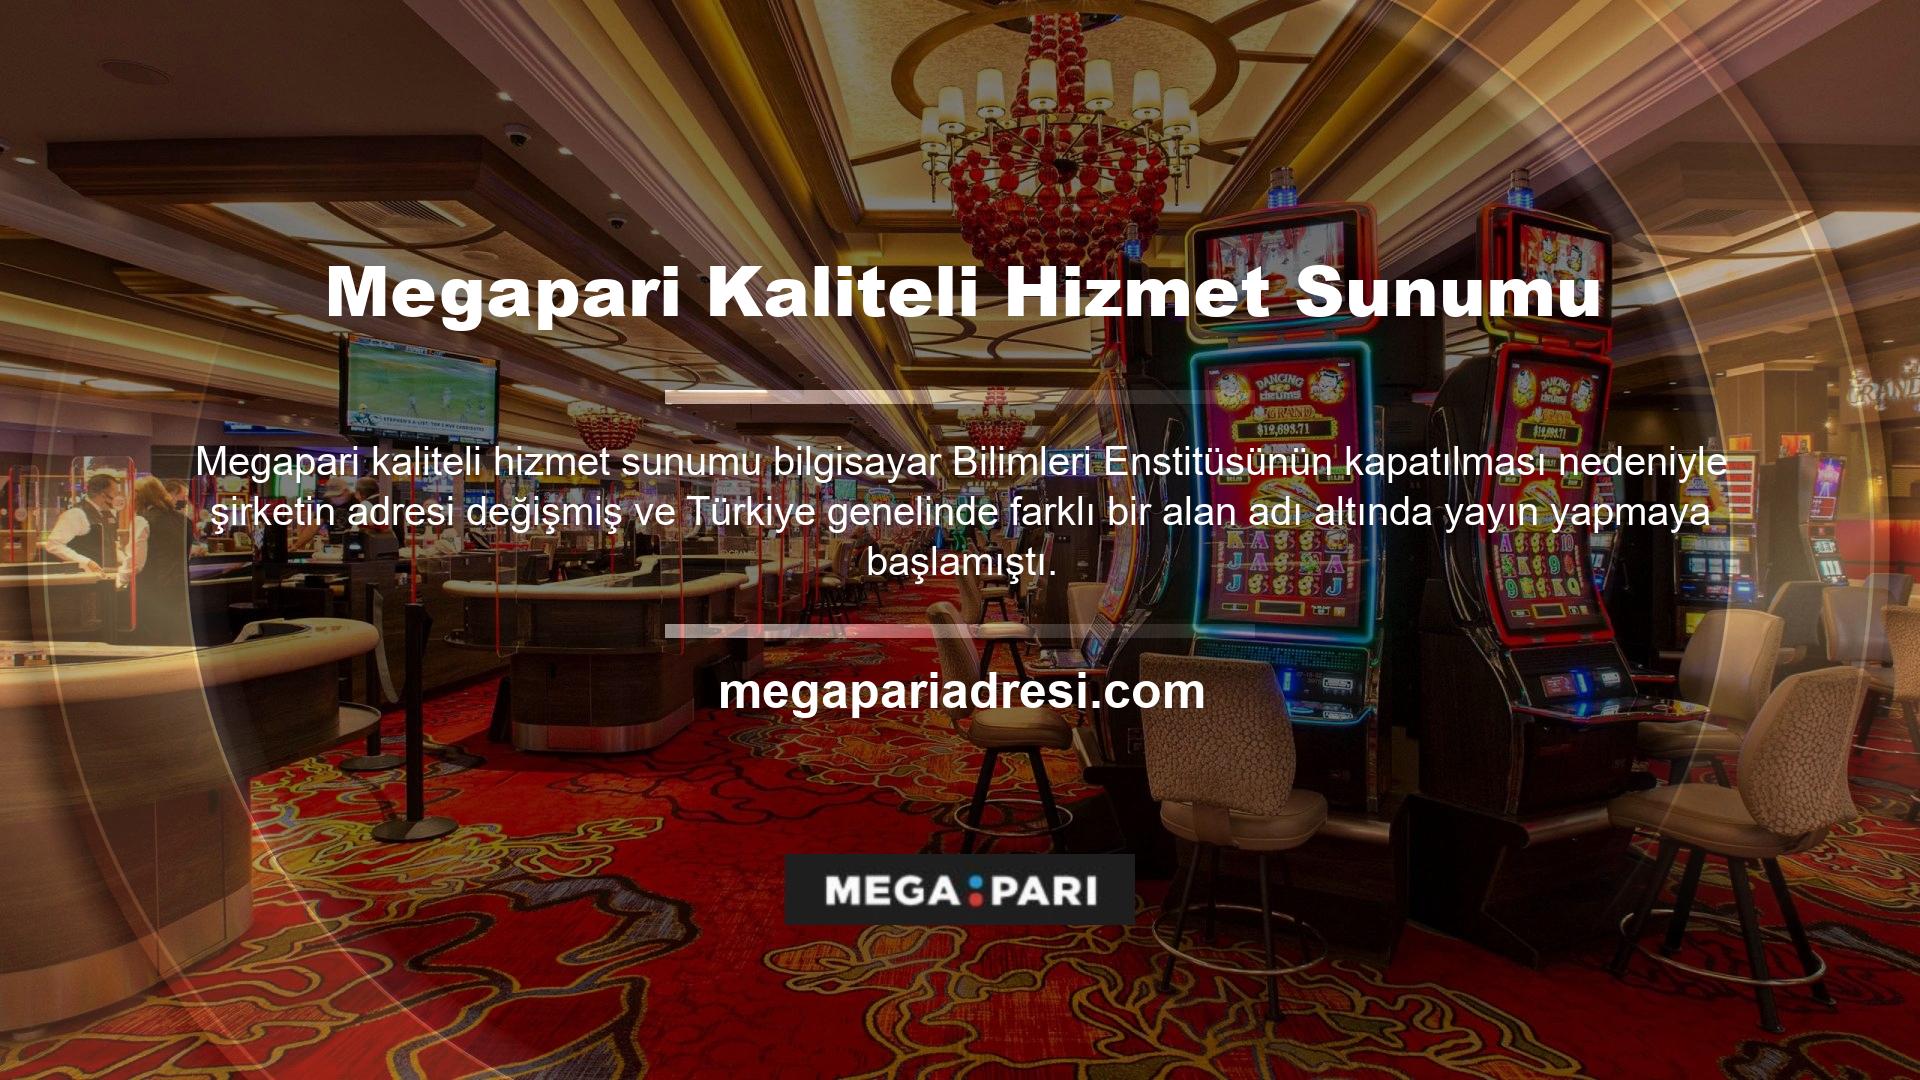 Bu sorunu çözmek için Megapari, 18 yaş üstü herkesin erişebileceği ve para kazanabileceği çevrimiçi casino oyunları sunmaktadır